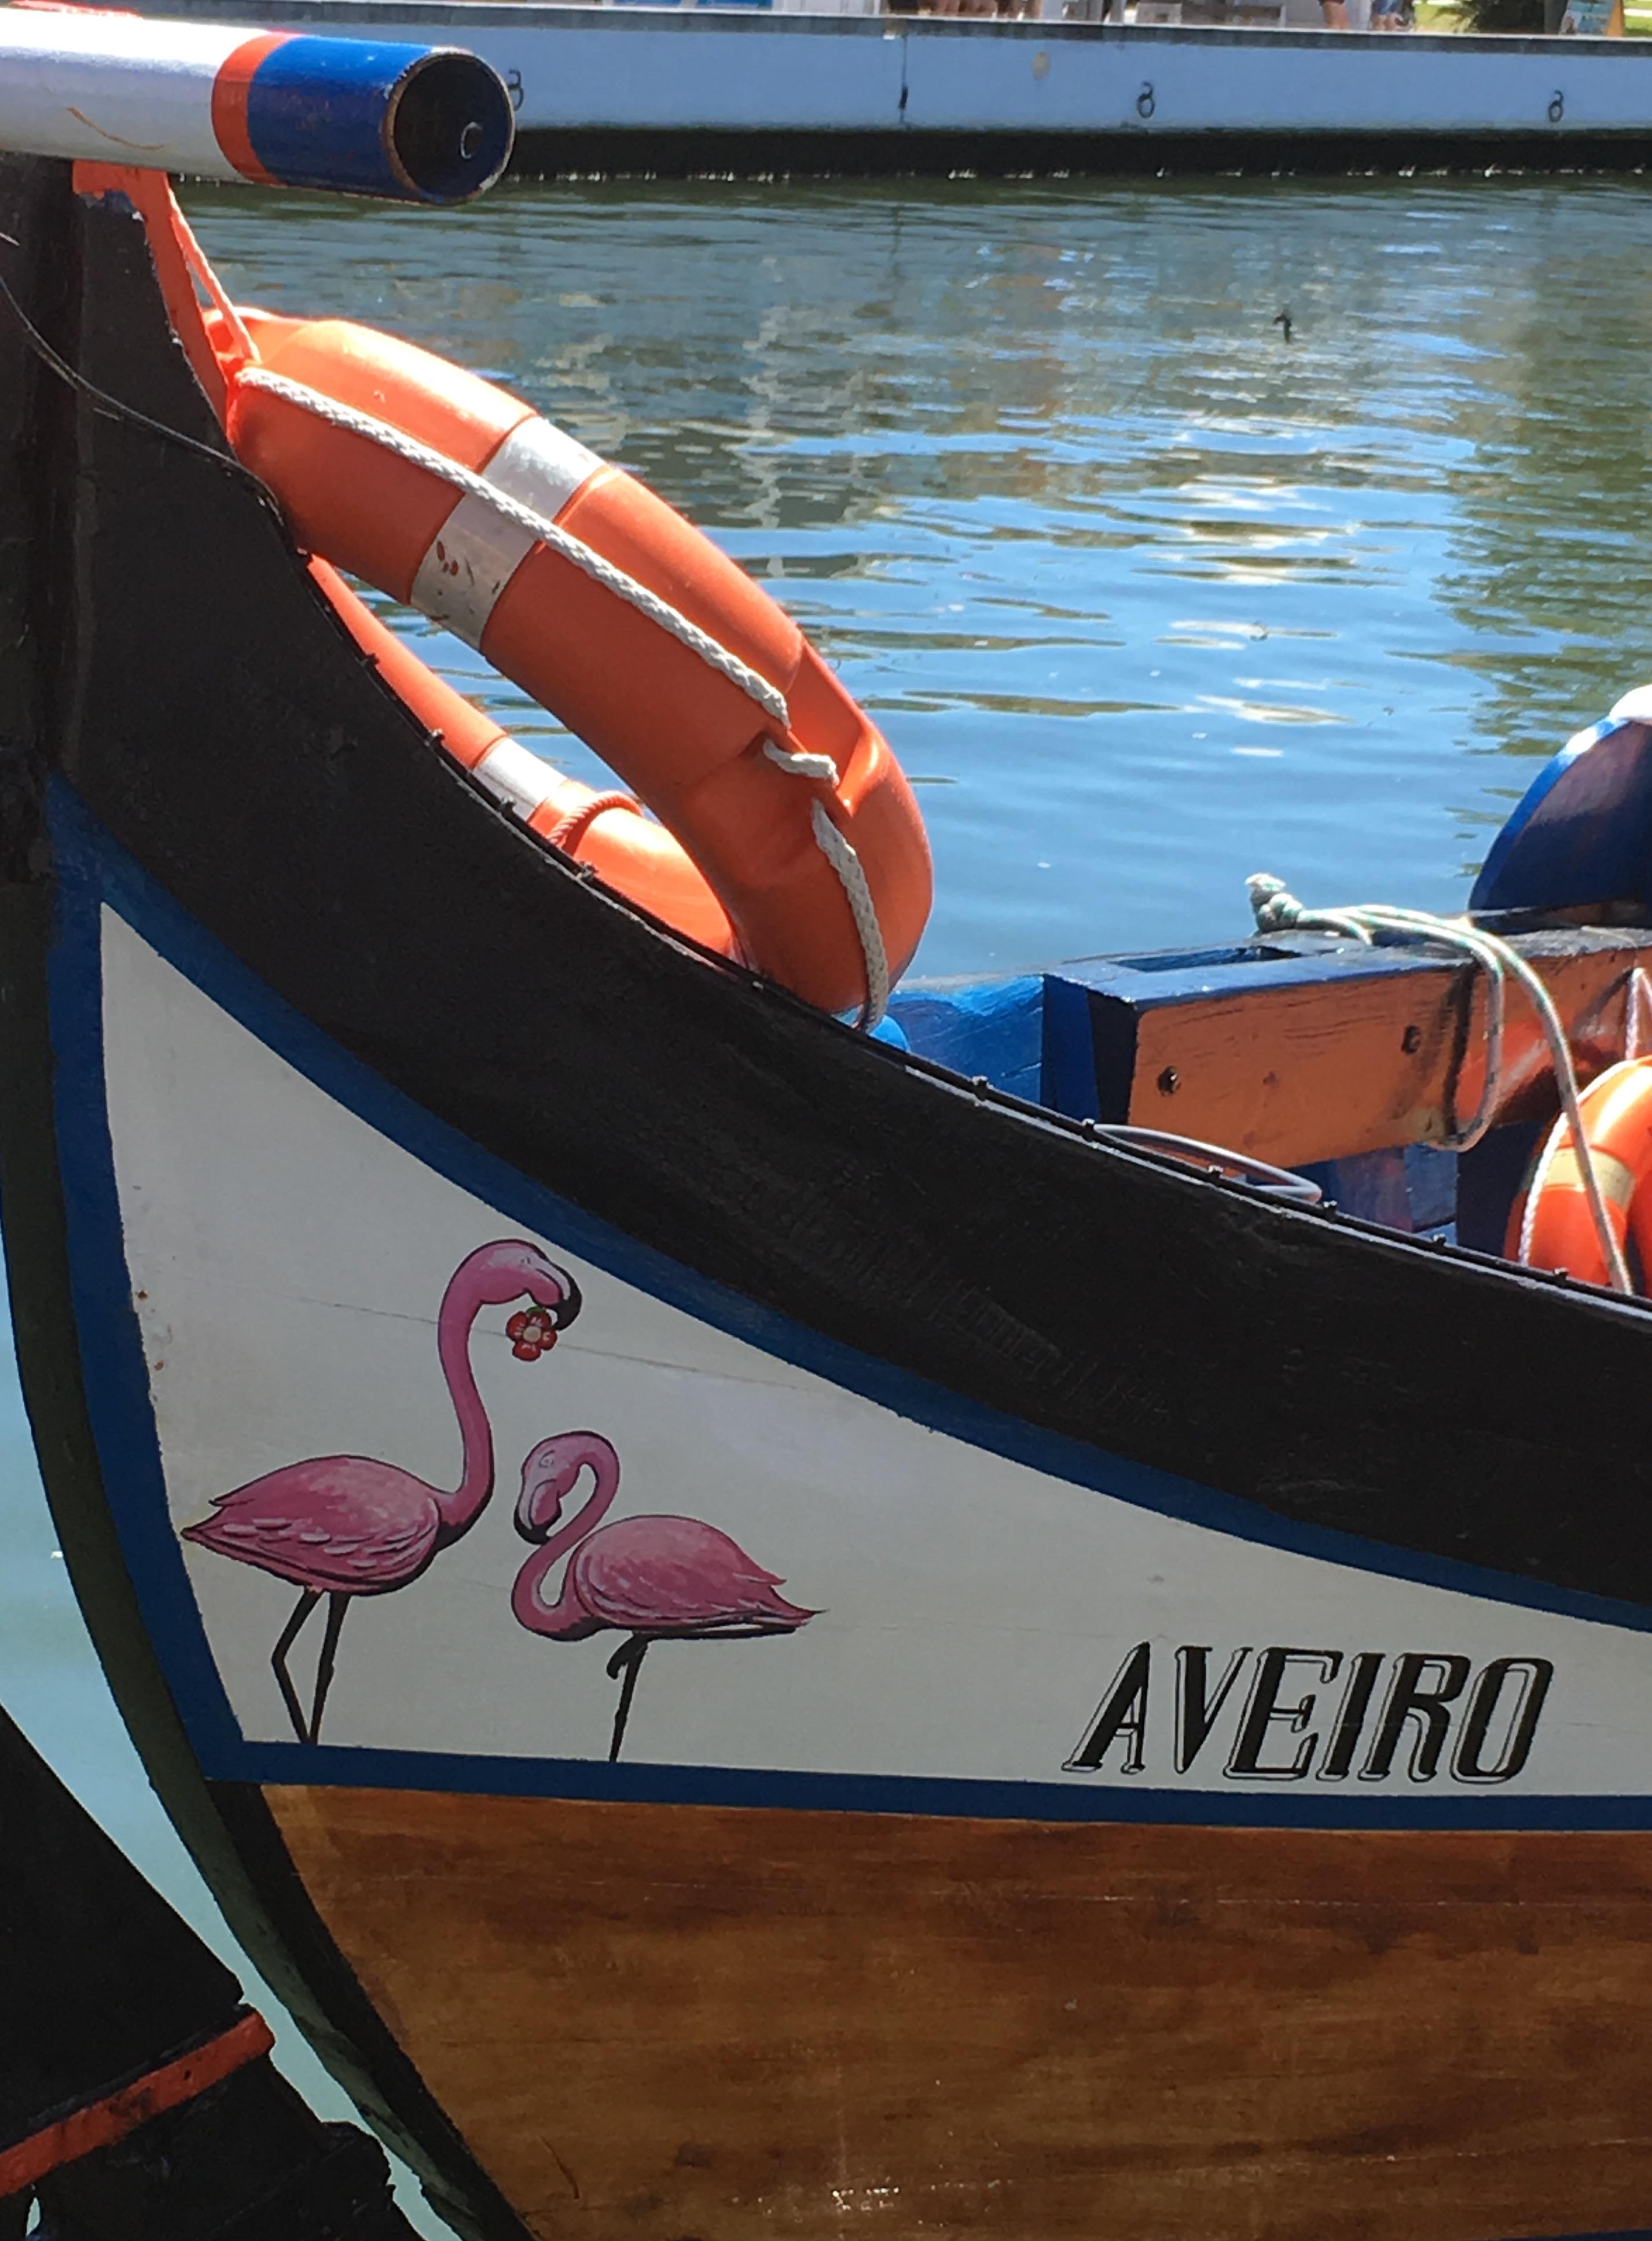 ☀️🇵🇹#boattrip #summer #flamingos #hipsterboat #aveiro #holiday